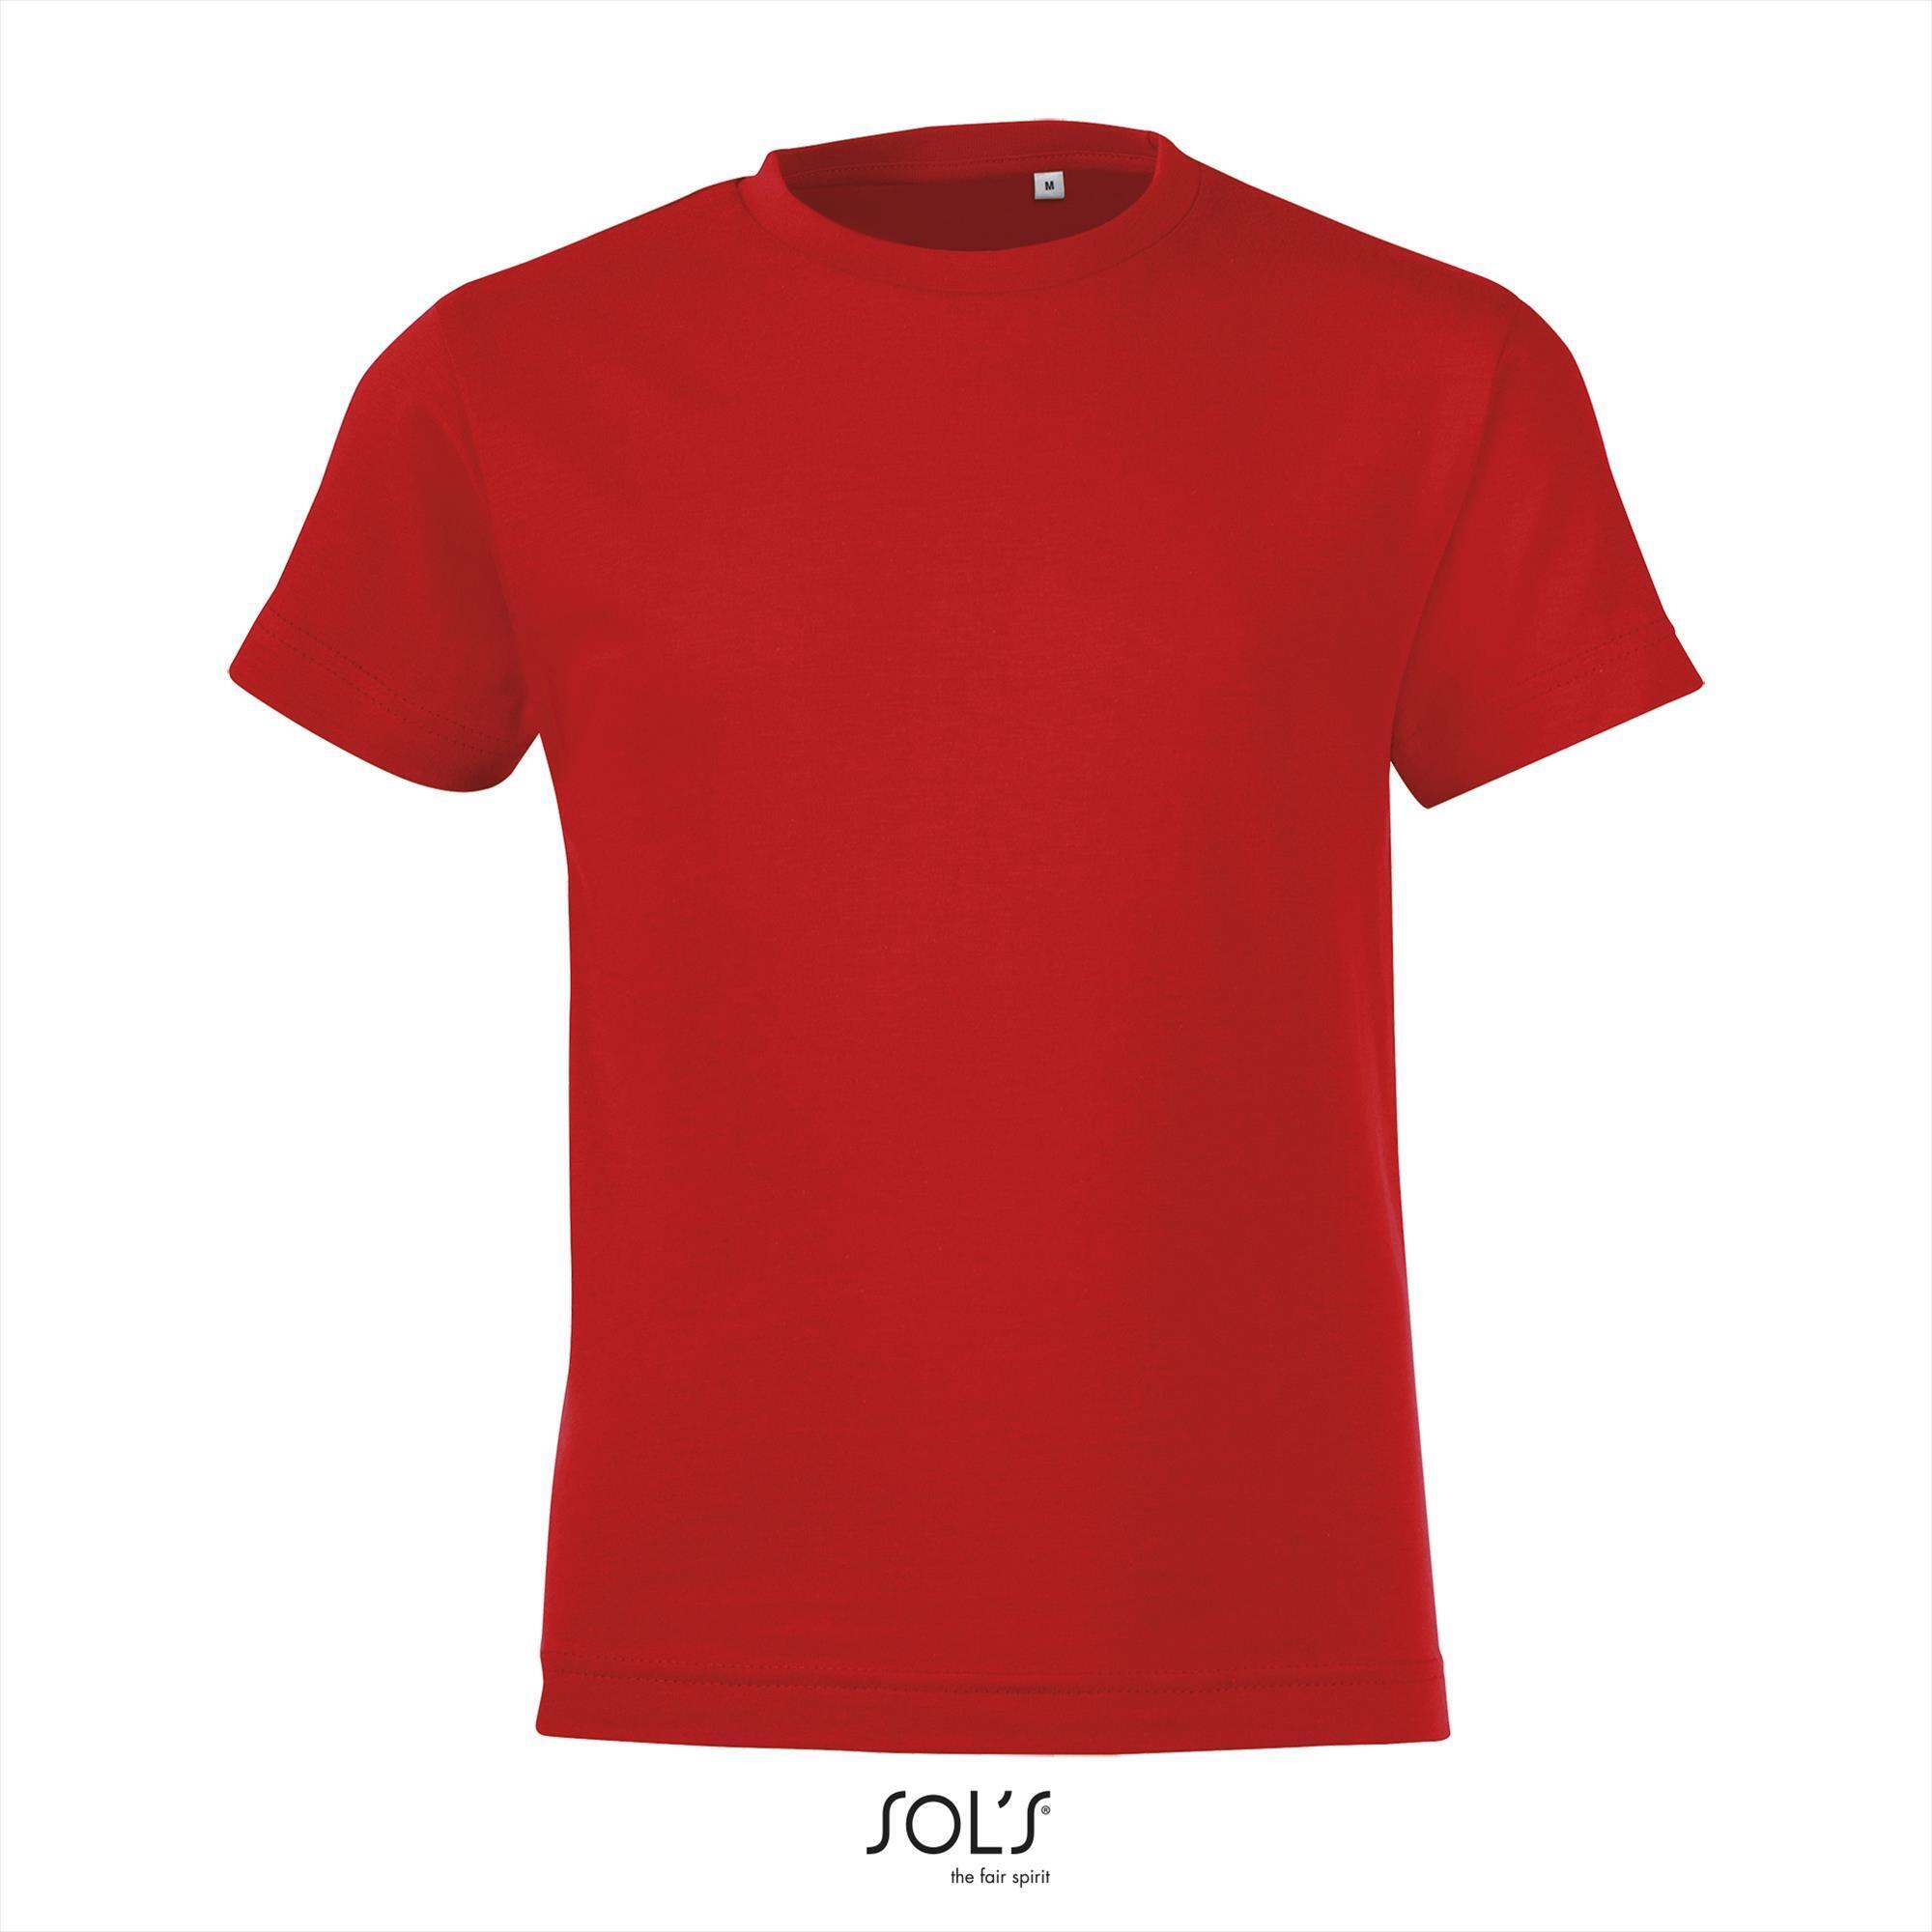 Kinder shirt rood Sol's 150 Regent fit